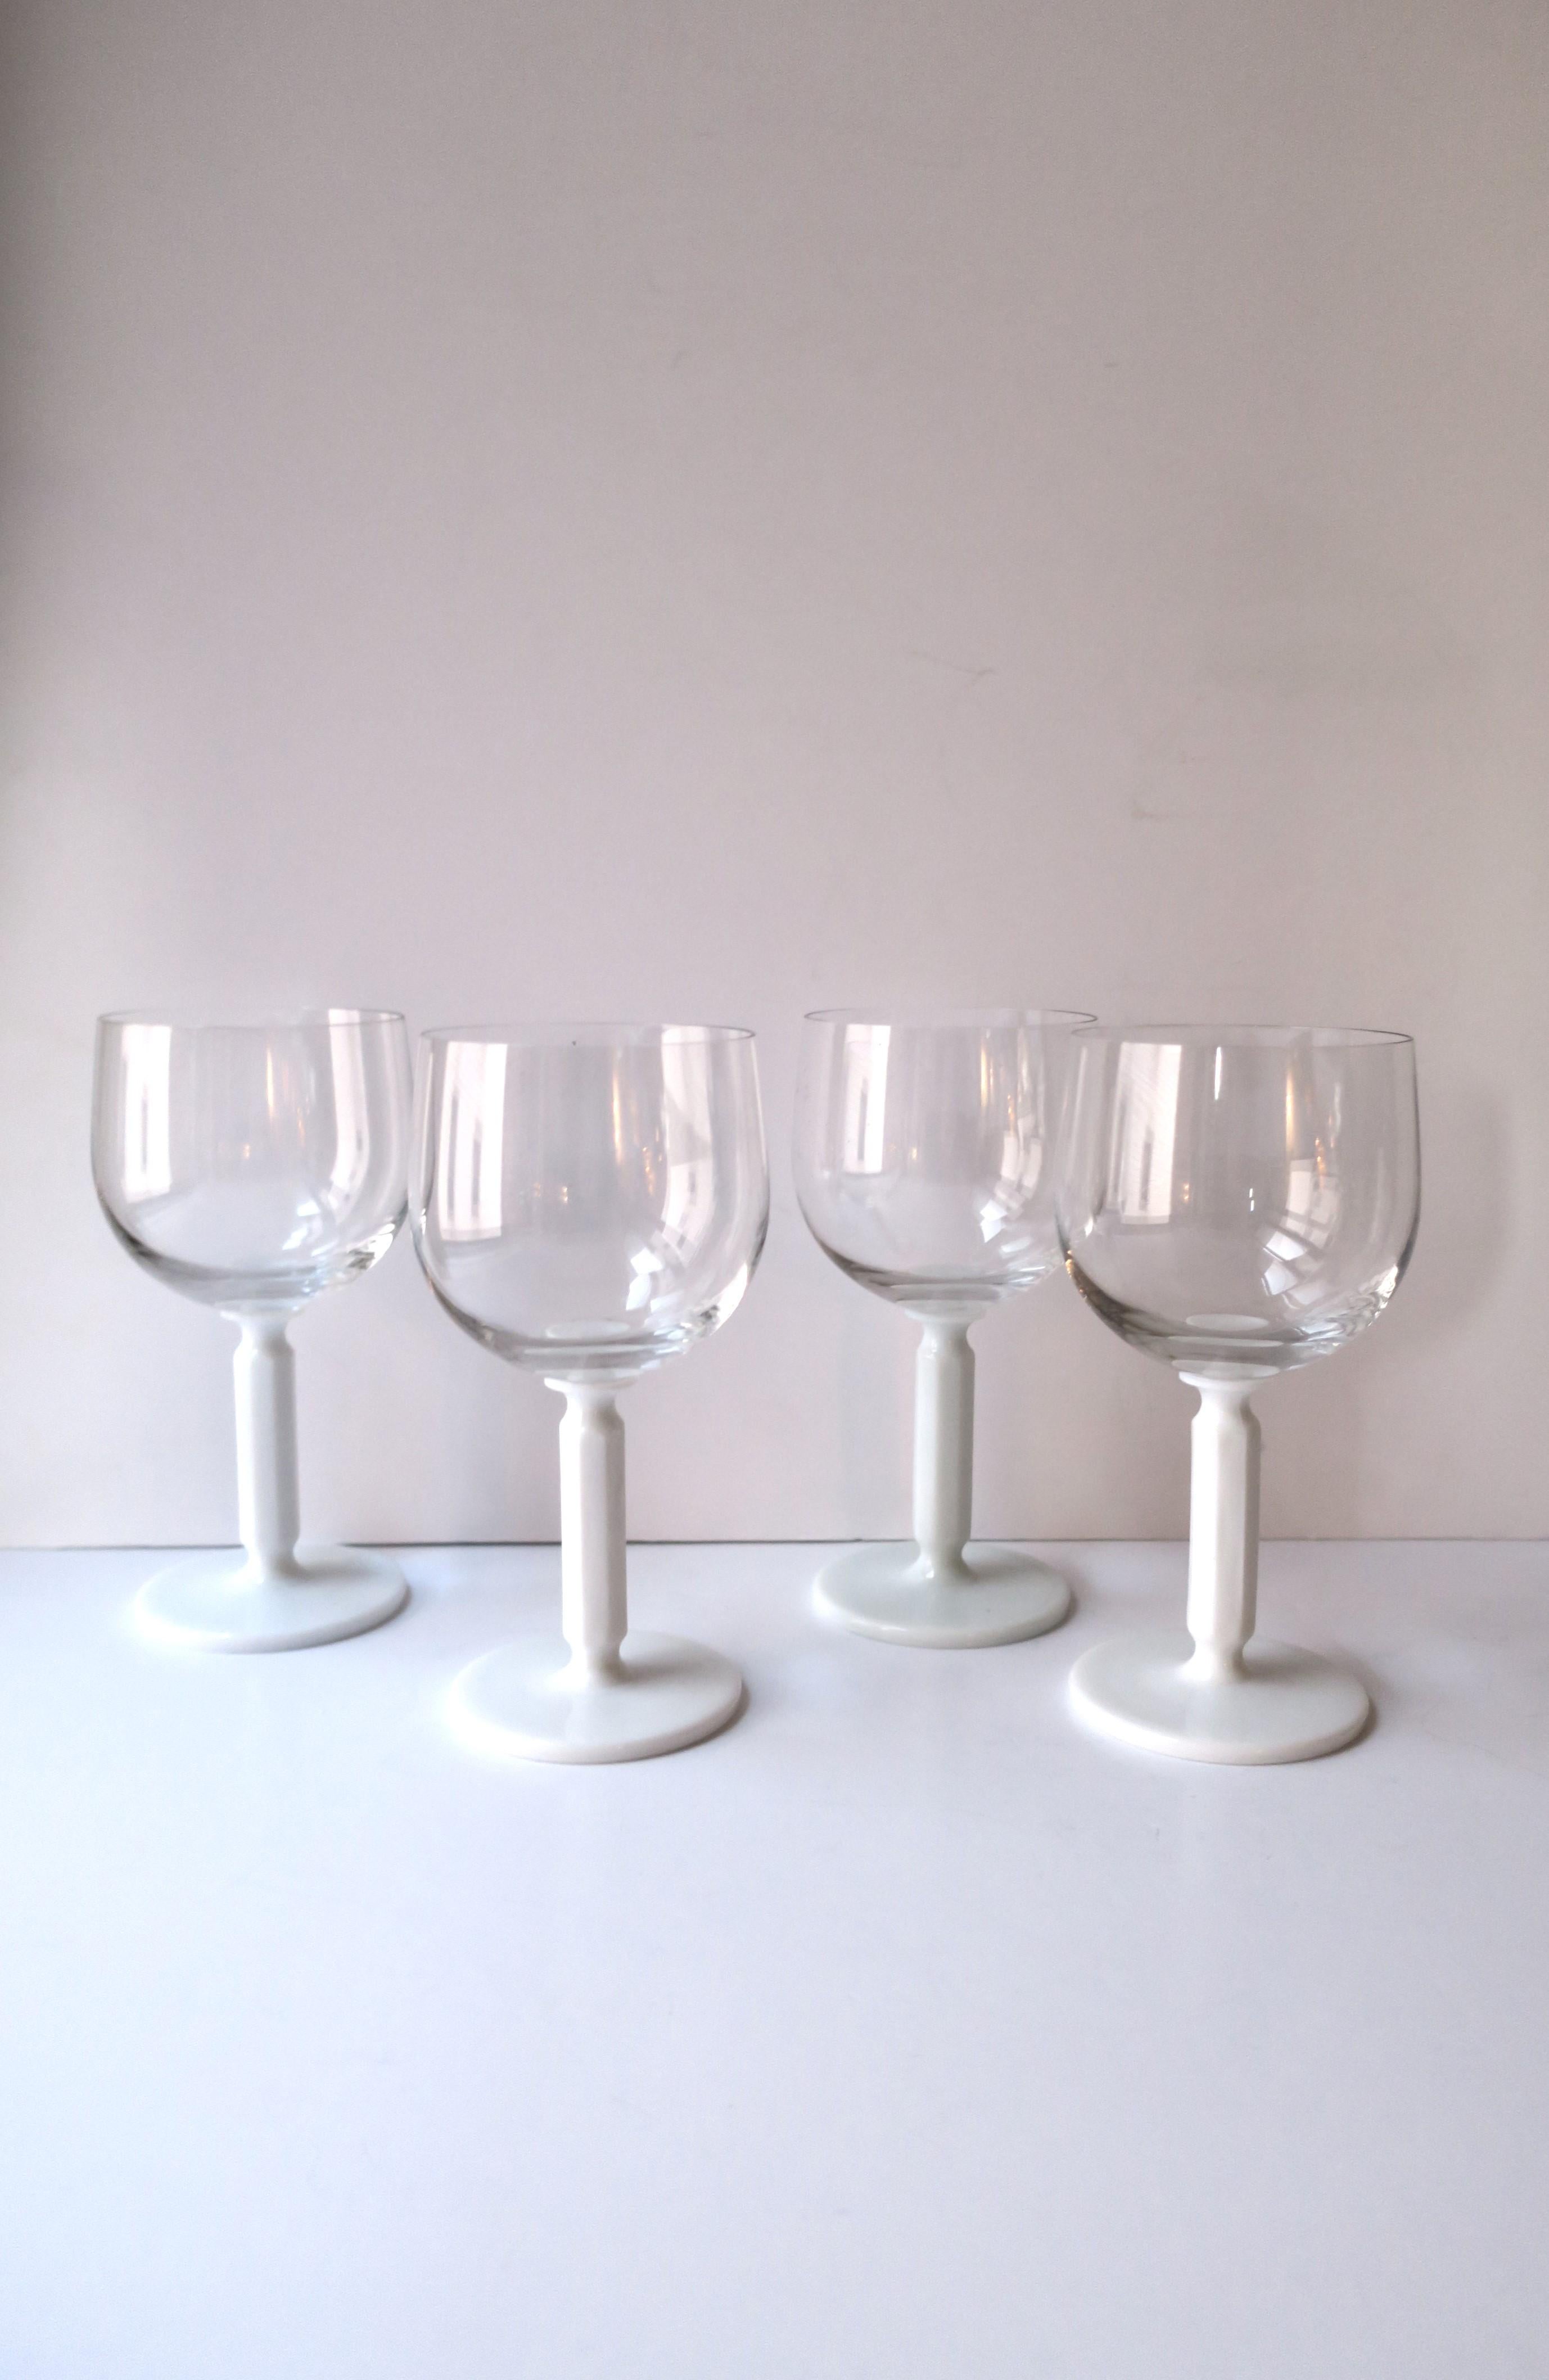 Ein wunderschönes und schickes Set aus vier (4) Rosenthal Studio-Line Kristallgläsern für Wasser, Wein oder Cocktails mit weißem, undurchsichtigem Milchglasstiel. Der weiße Stiel hat eine achteckige Form, die ein schönes Design-Detail darstellt. Set